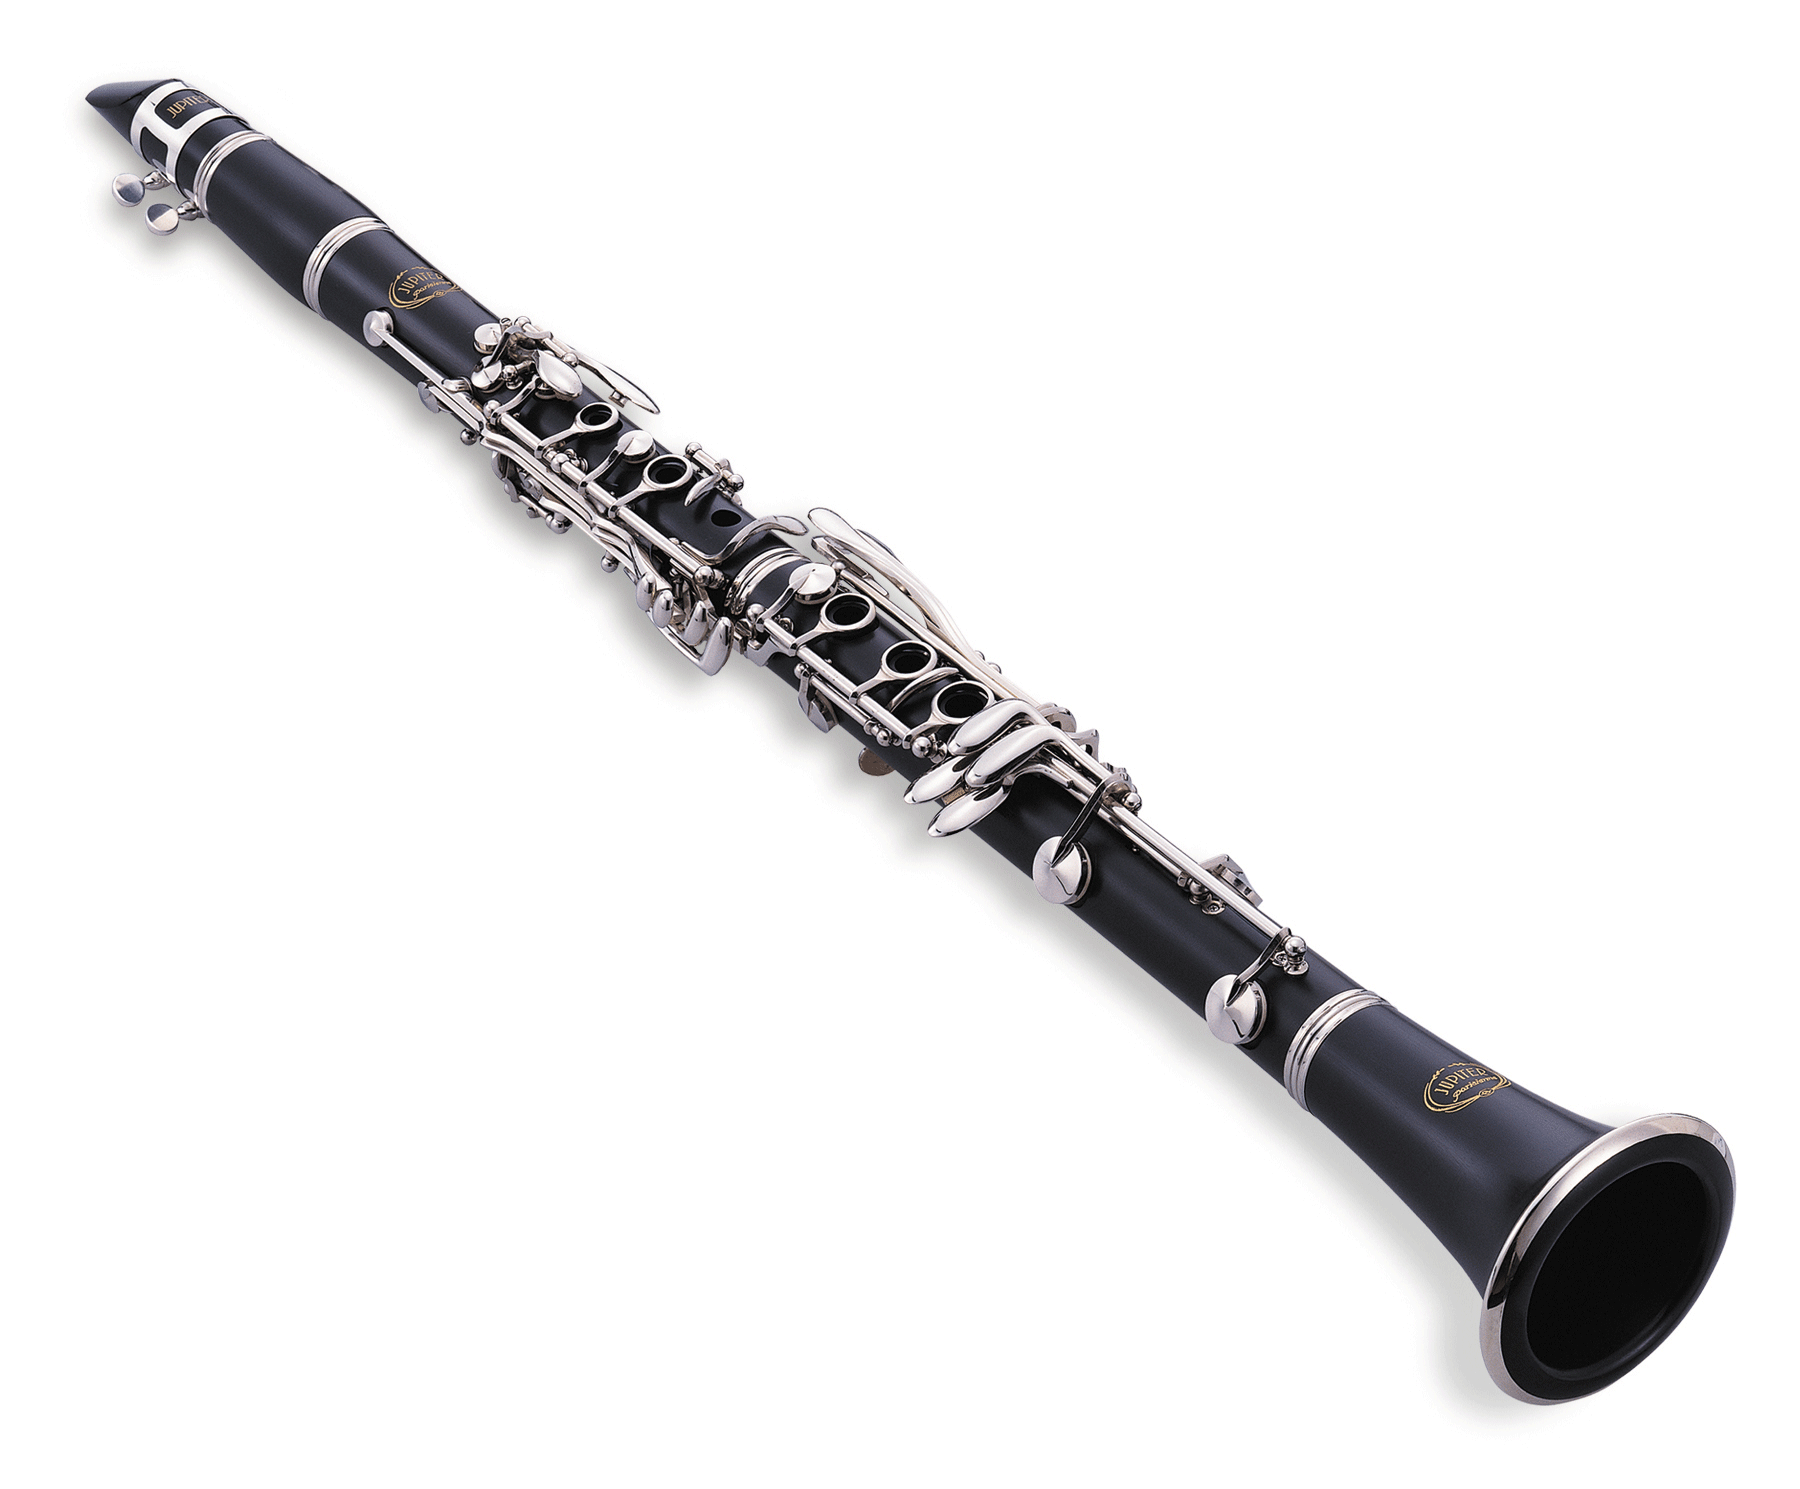 Кларнет какой группе. Кларнет Jupiter JCL-750s. Кларнет деревянный духовой музыкальный инструмент. Гобой деревянный духовой музыкальный инструмент. Кларнет это армянский инструмент.